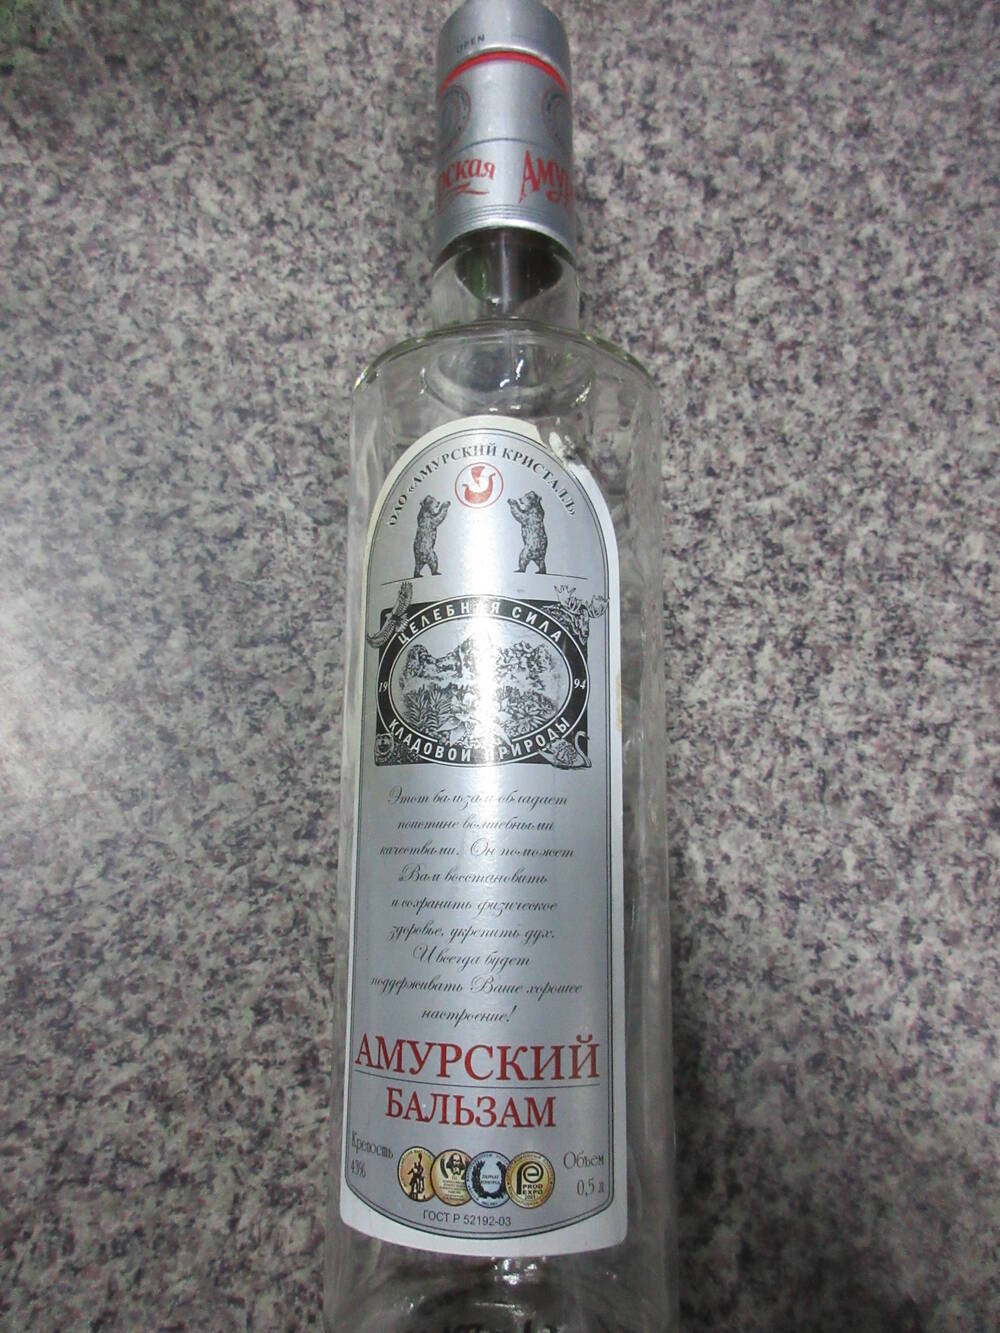 Тара для алкогольной продукции ОАО Амурский кристалл Амурский бальзам